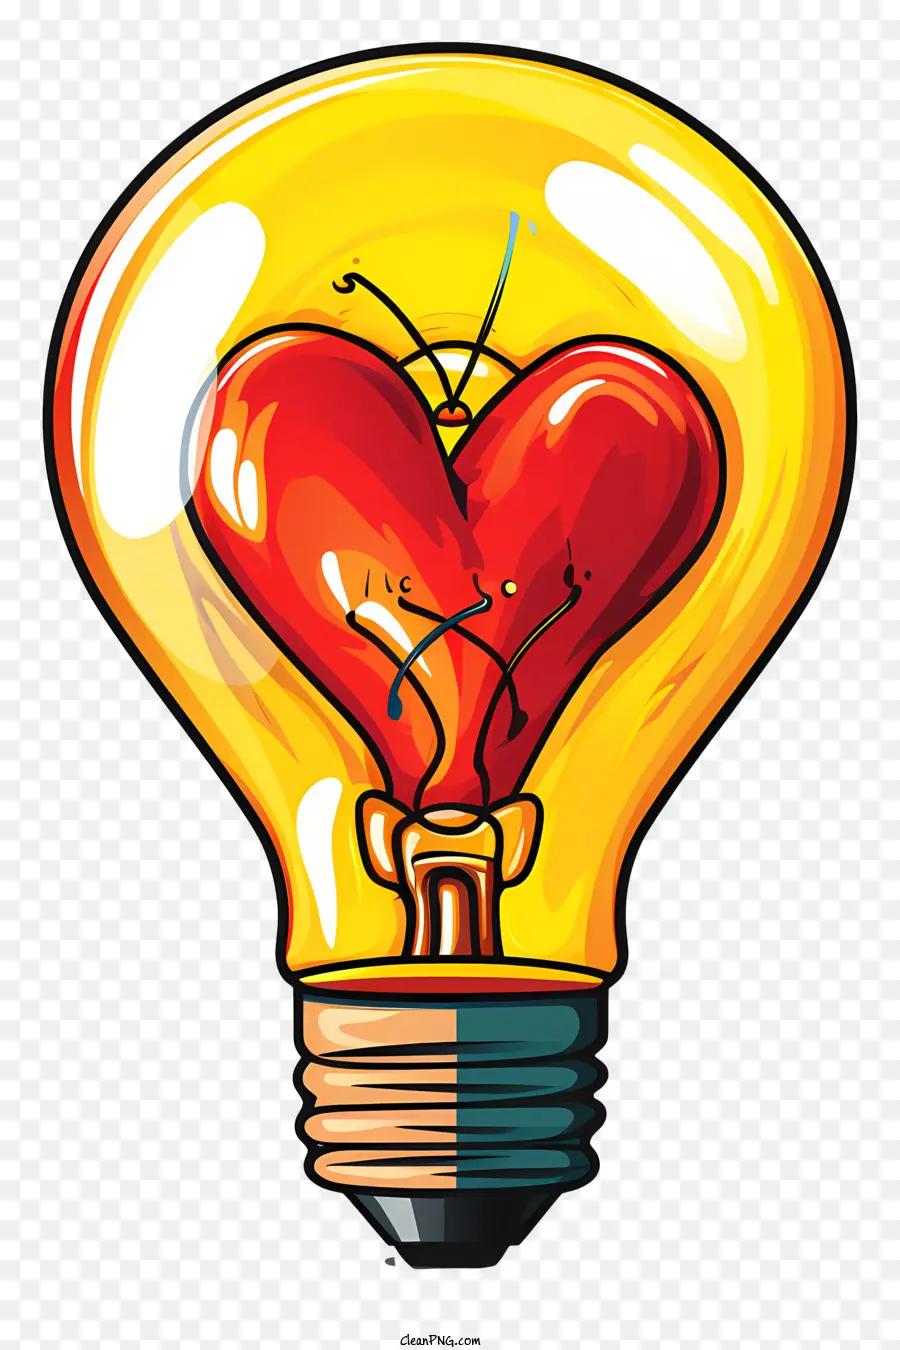 light bulb with heart broken light bulb heart shaped crack cracked bulb light bulb symbol